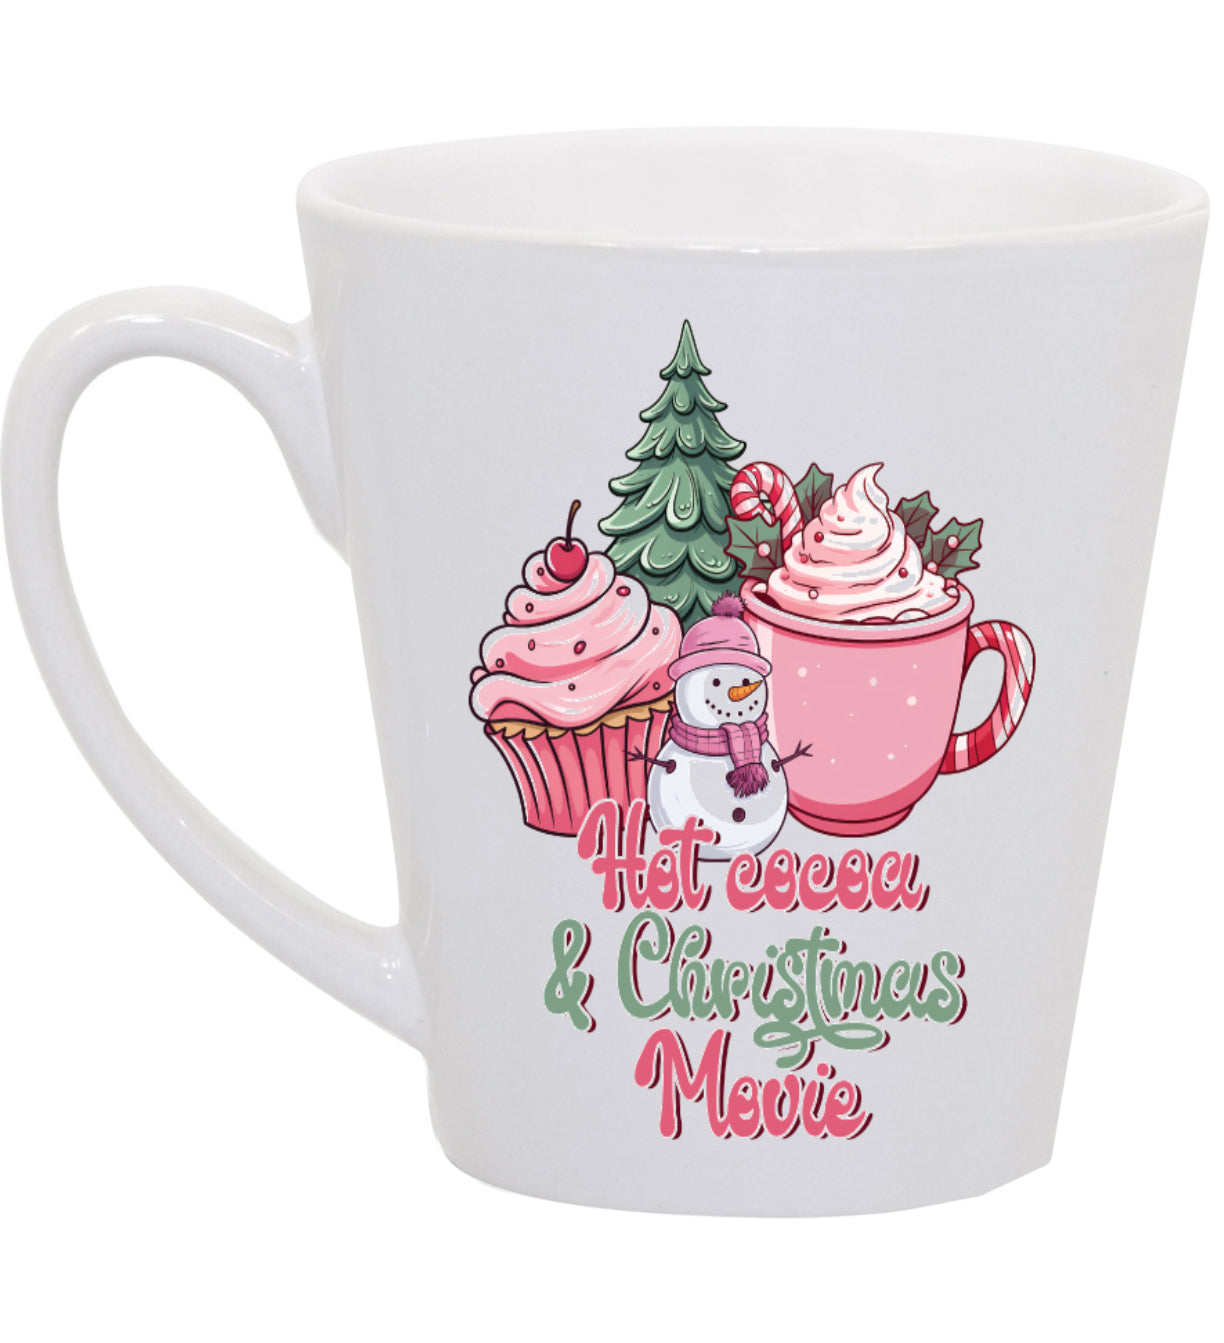 Christmas Movie Watching Coffee Mug with Pink Snowman, 11oz, 15oz, 20oz, Black Ringer Coffee Mug 11oz, Latte 12oz, v3 Ceramic Drinkware